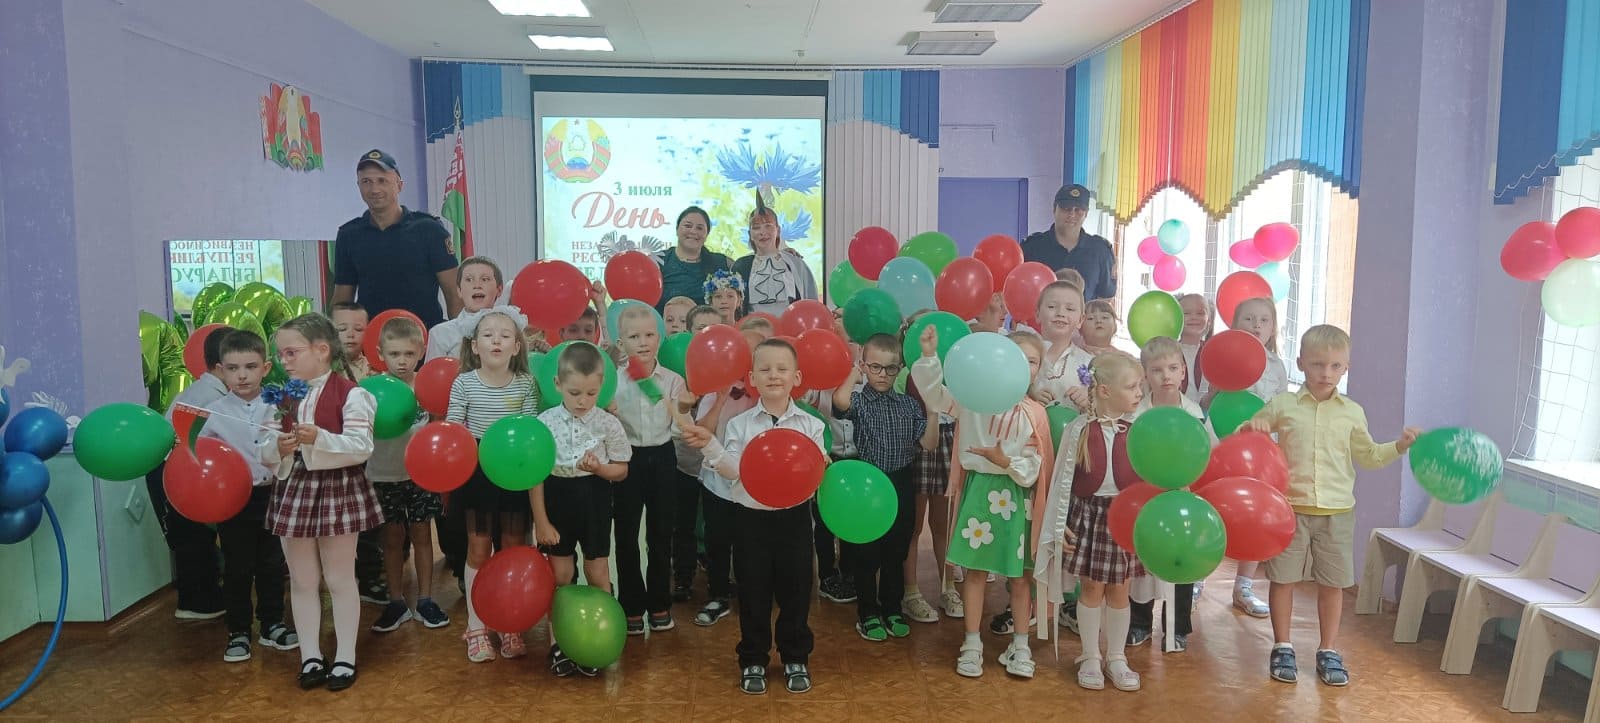 В нашем детском саду прошло мероприятие посвященное - Дню независимости Республики Беларусь, состоящее из песен, танцев и стихов в честь праздника.